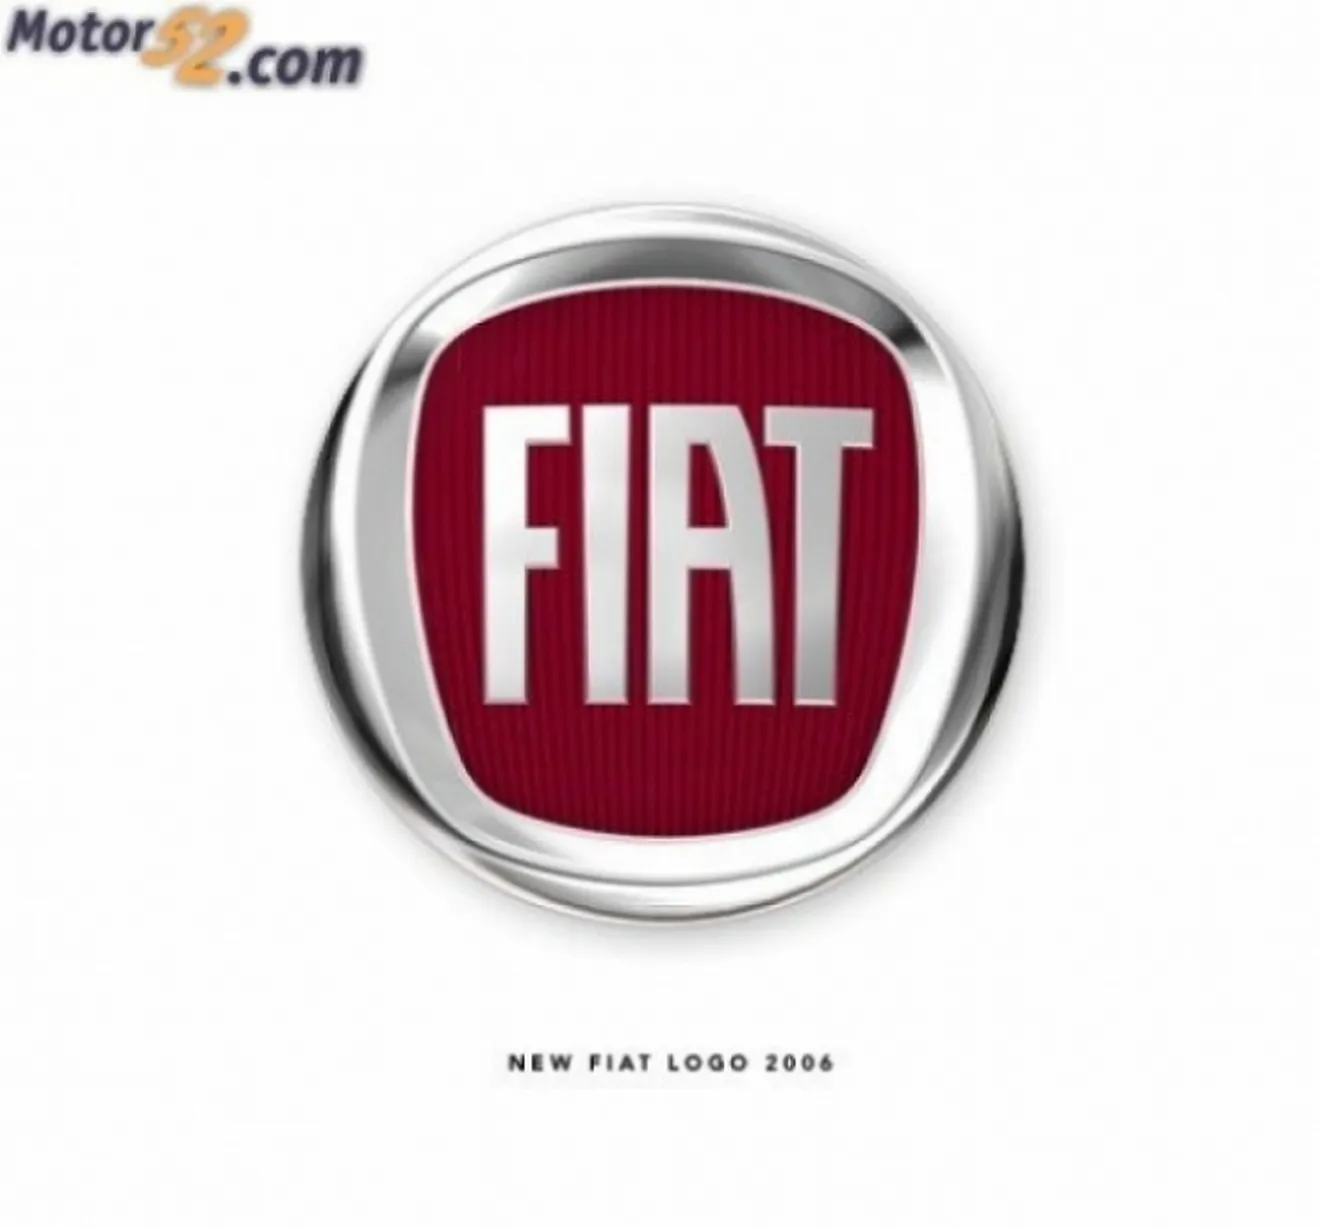 Fiat desmiente los rumores de fusión con Peugeot-Citroën